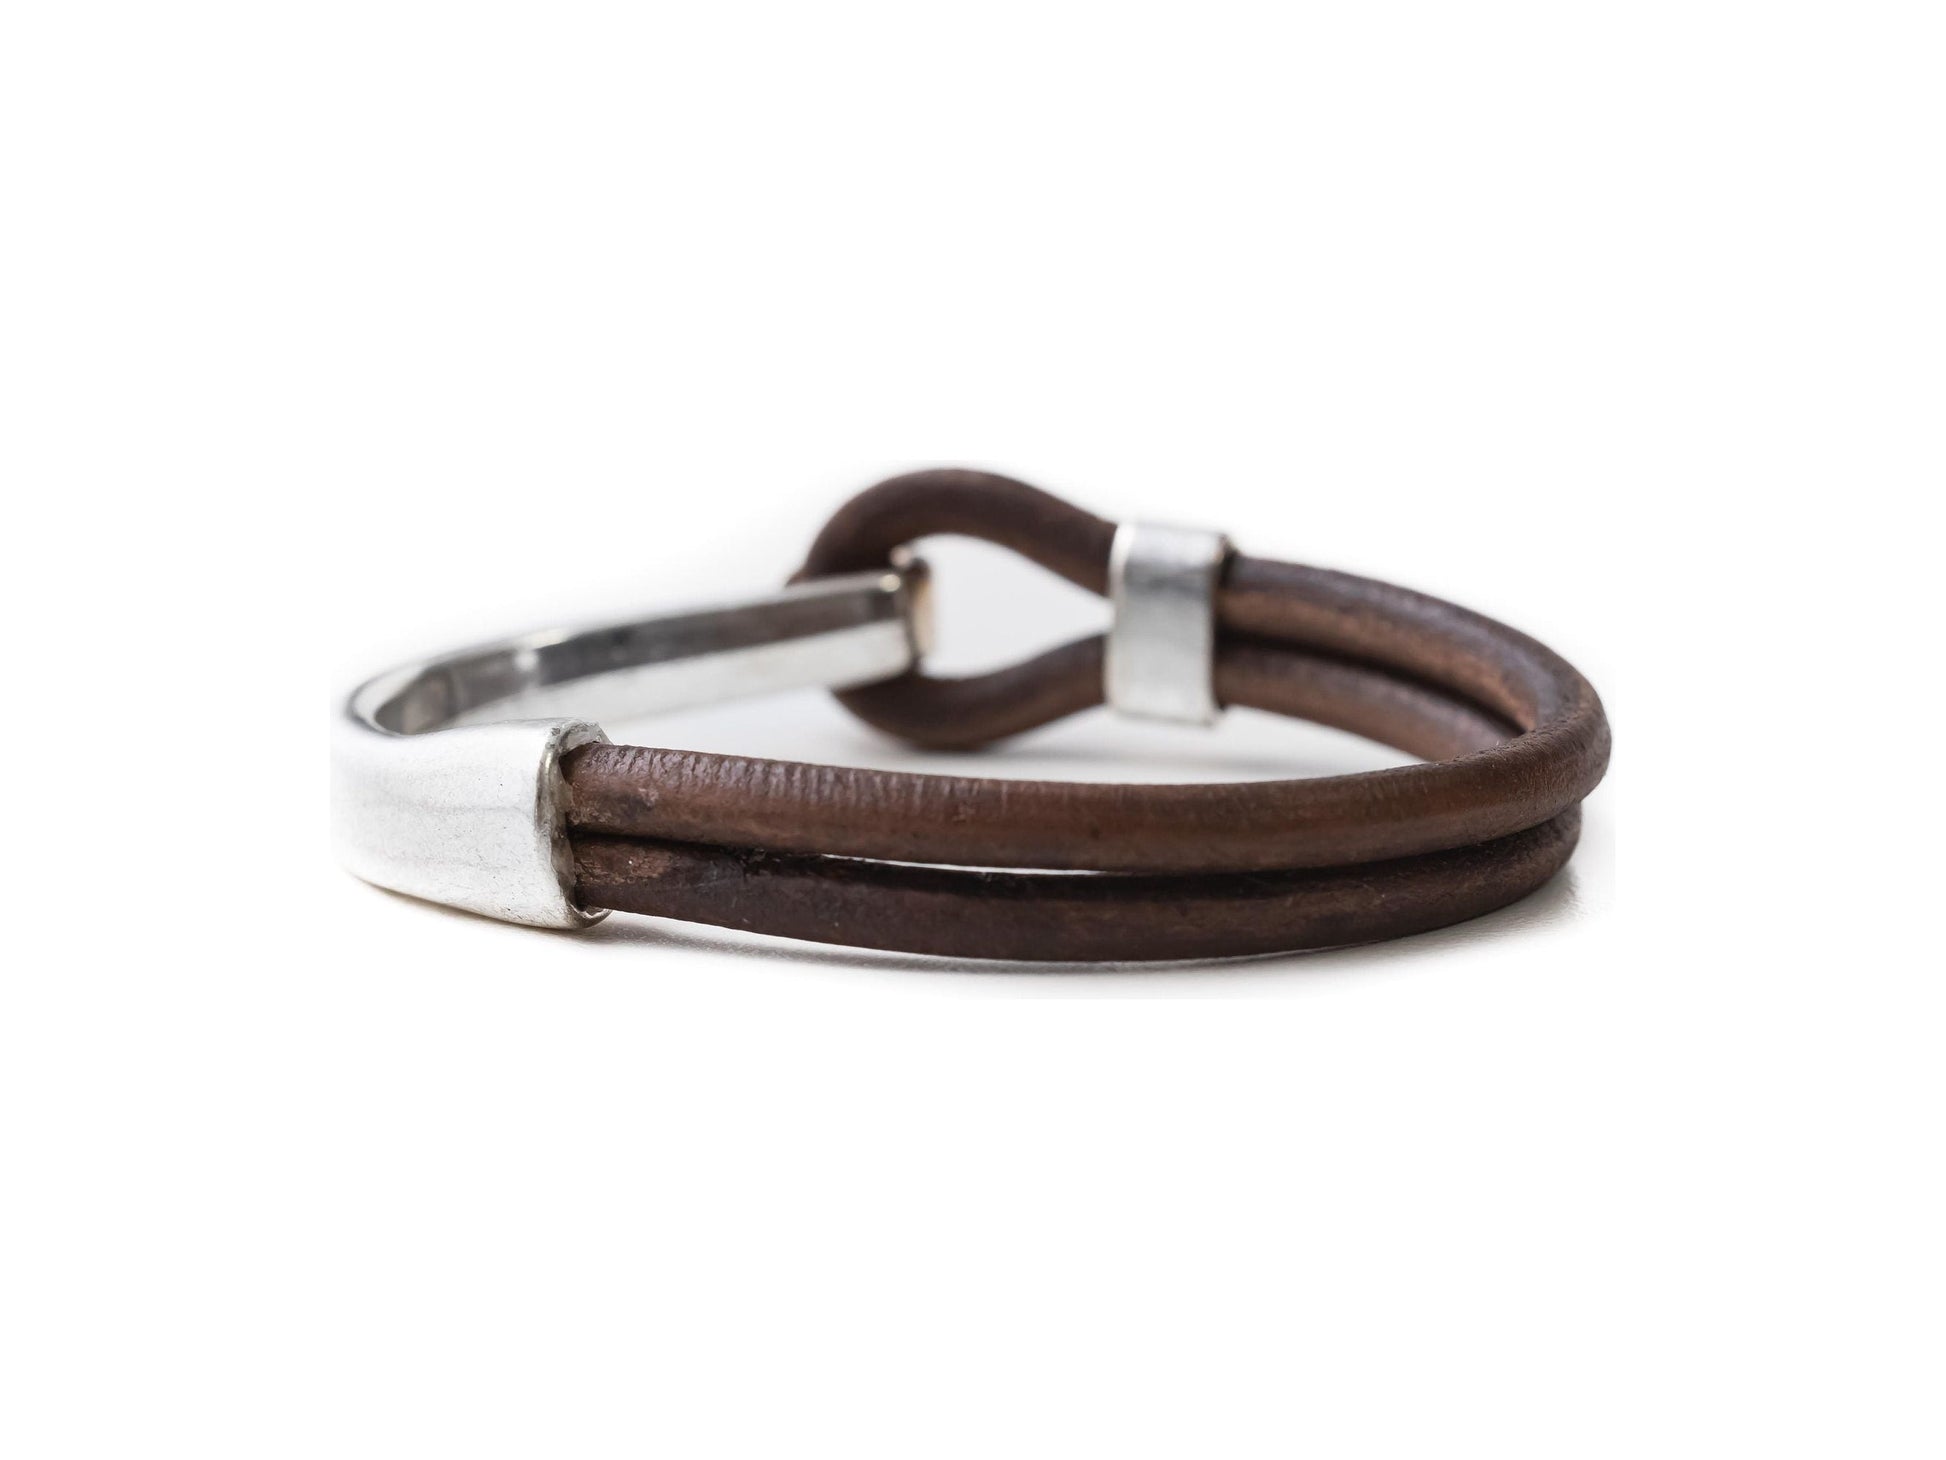 Half clasp leather bracelet